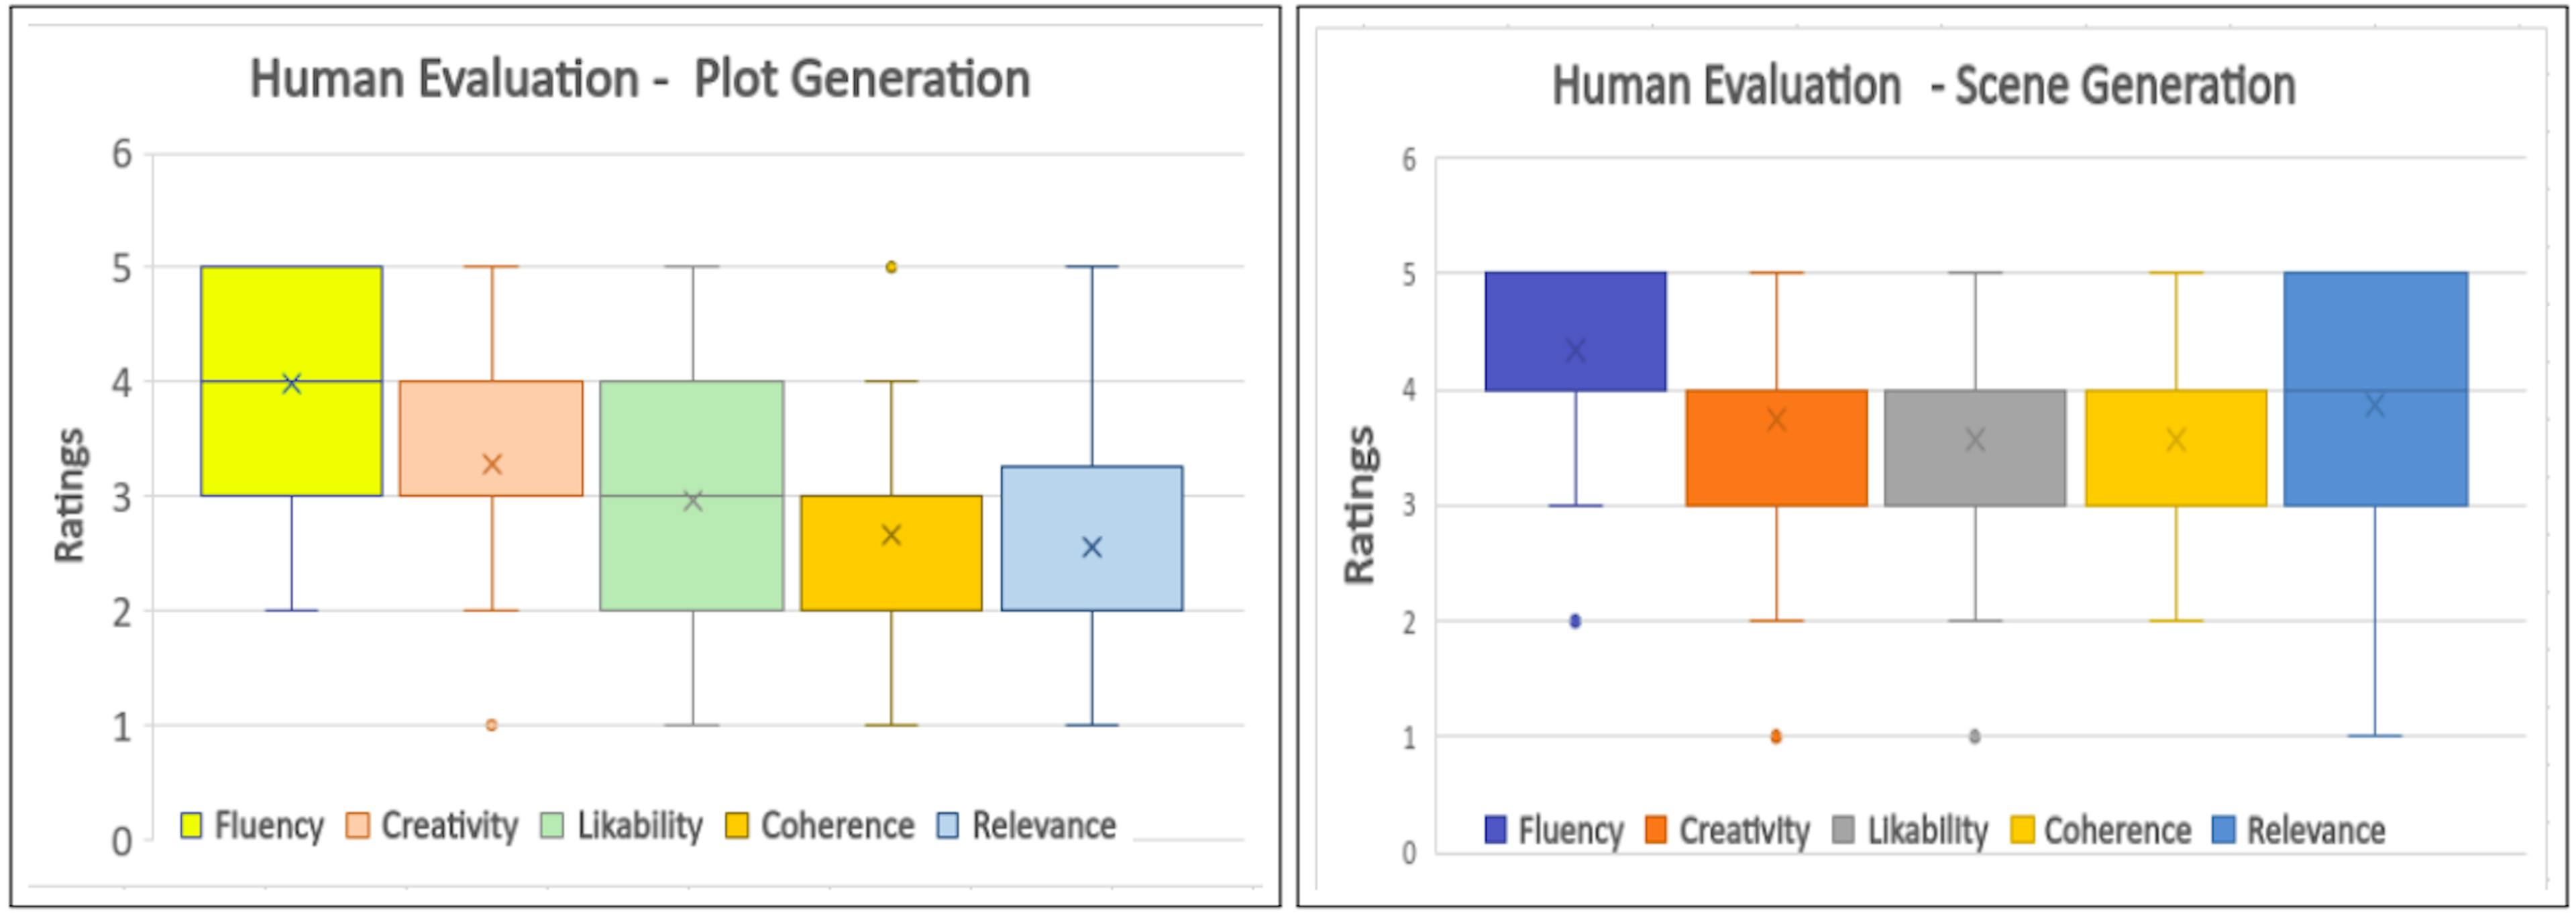 Şekil 5: Olay örgüsünün ve sahne oluşturma modellerinin İnsan Değerlendirmesi için kutu grafiği grafikleri.